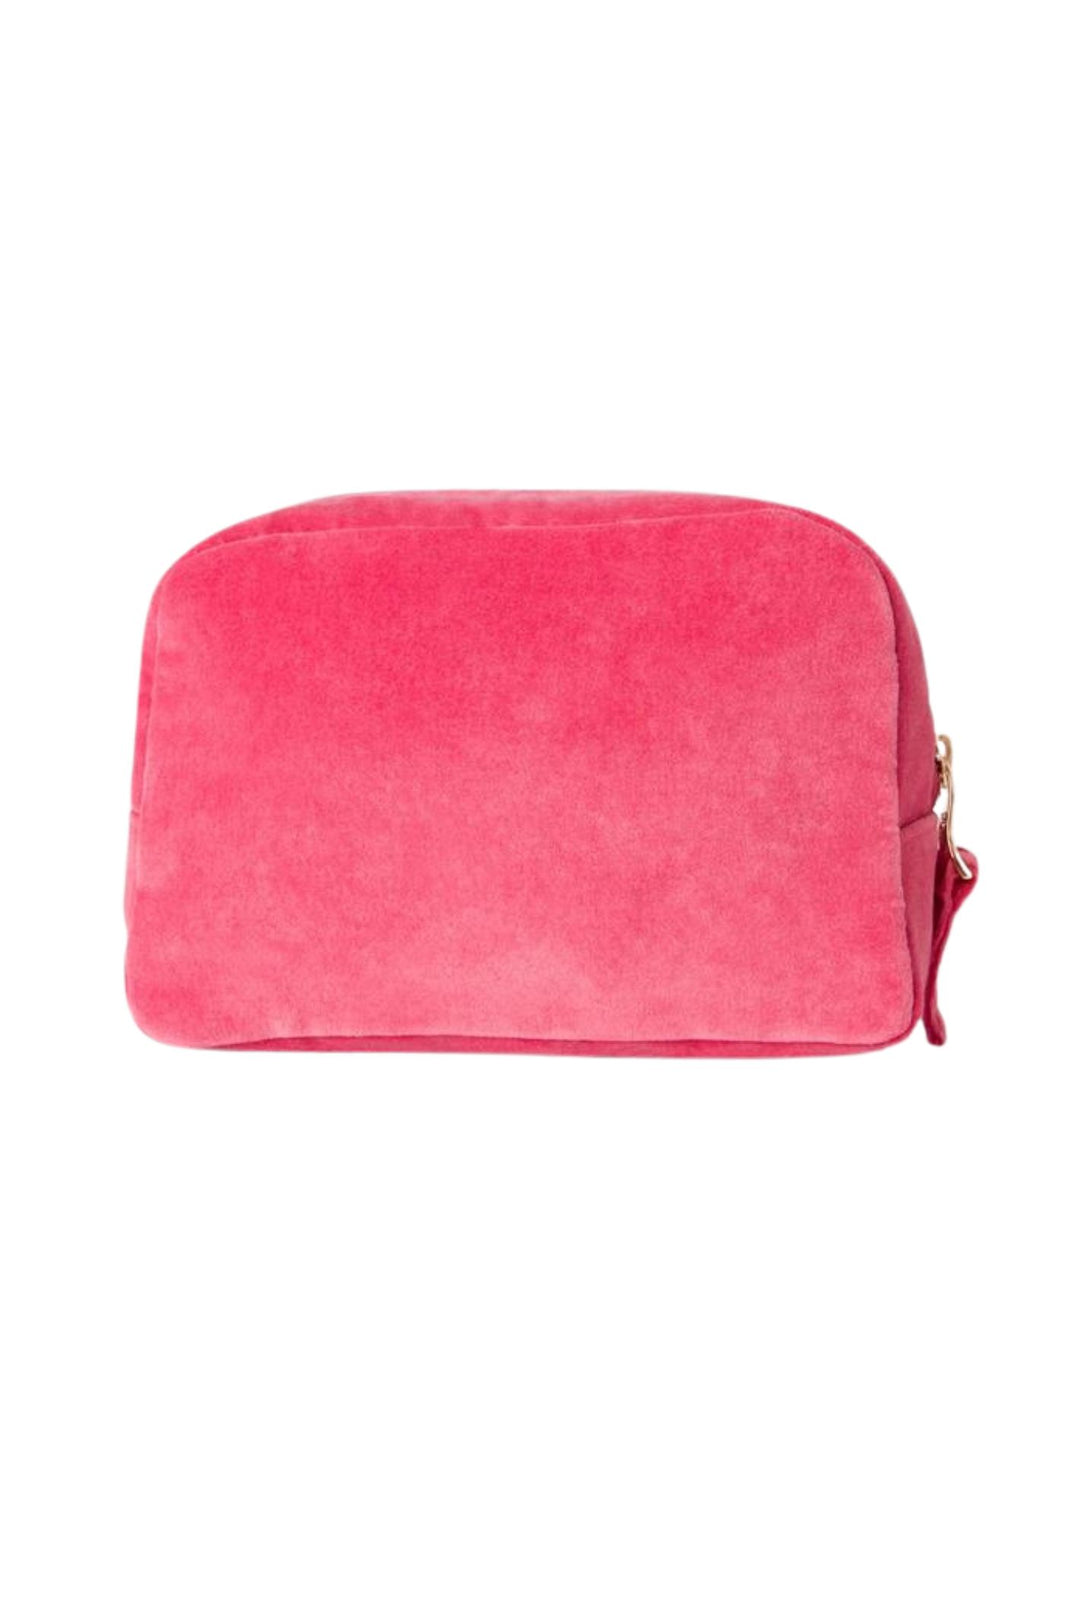 Elizabeth Scarlett Blush Pink Flamingo Cosmetics Bag